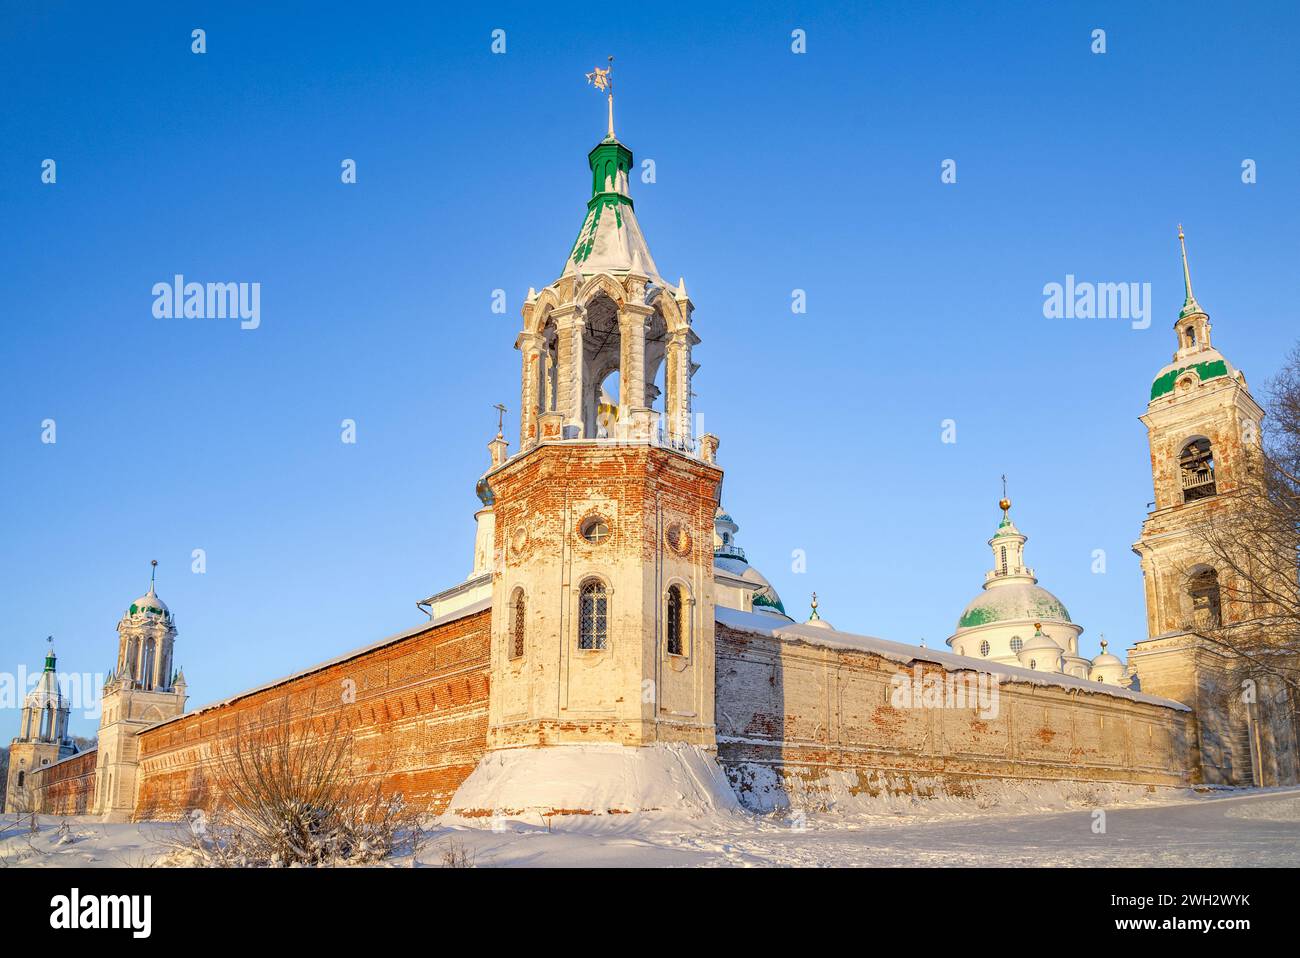 Tours de l'ancien monastère Spaso-Yakovlevsky Dmitriev. Rostov Veliky, région de Yaroslavl. Bague d'or de Russie Banque D'Images